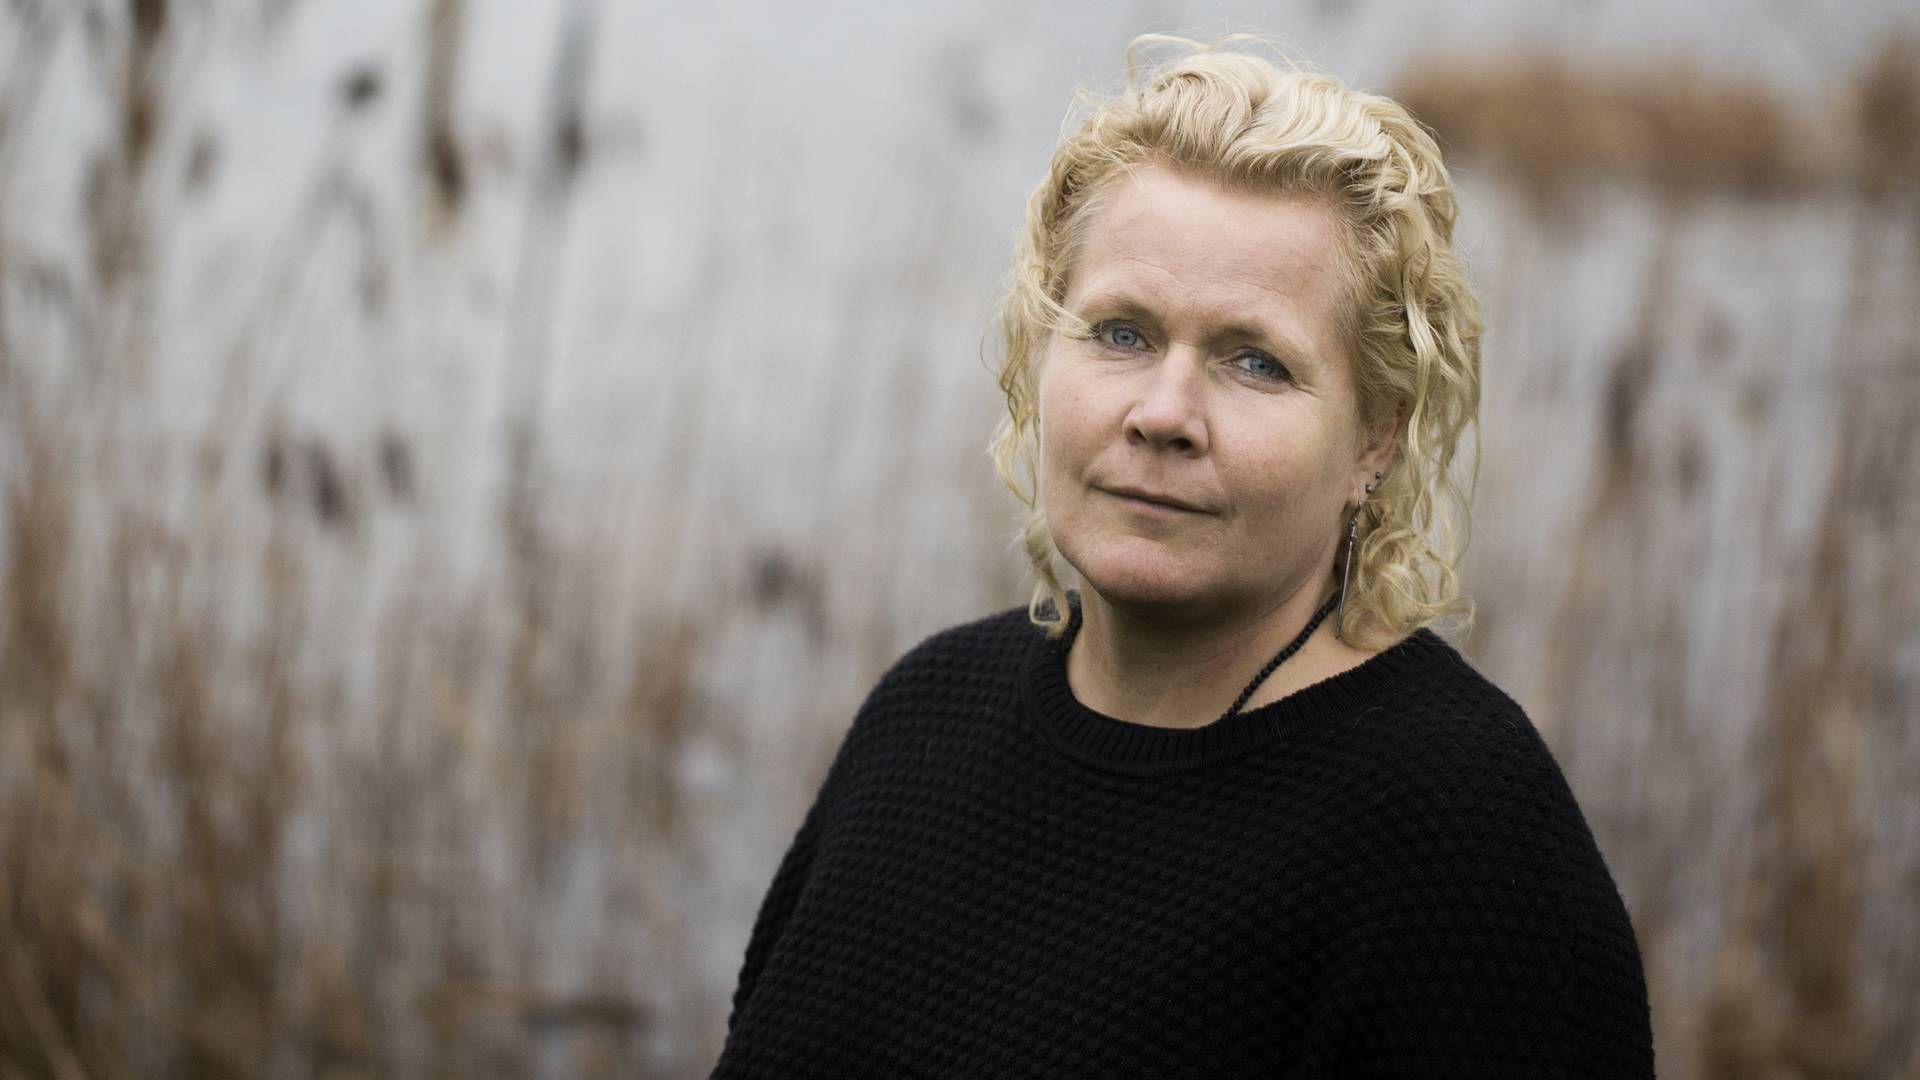 Annemette Markvad vil fremover være adm. direktør i Pilgrim, der i 2020/21 landede et overskud på 9,6 mio. kr. | Foto: Charlotte de la Fuente/JPA